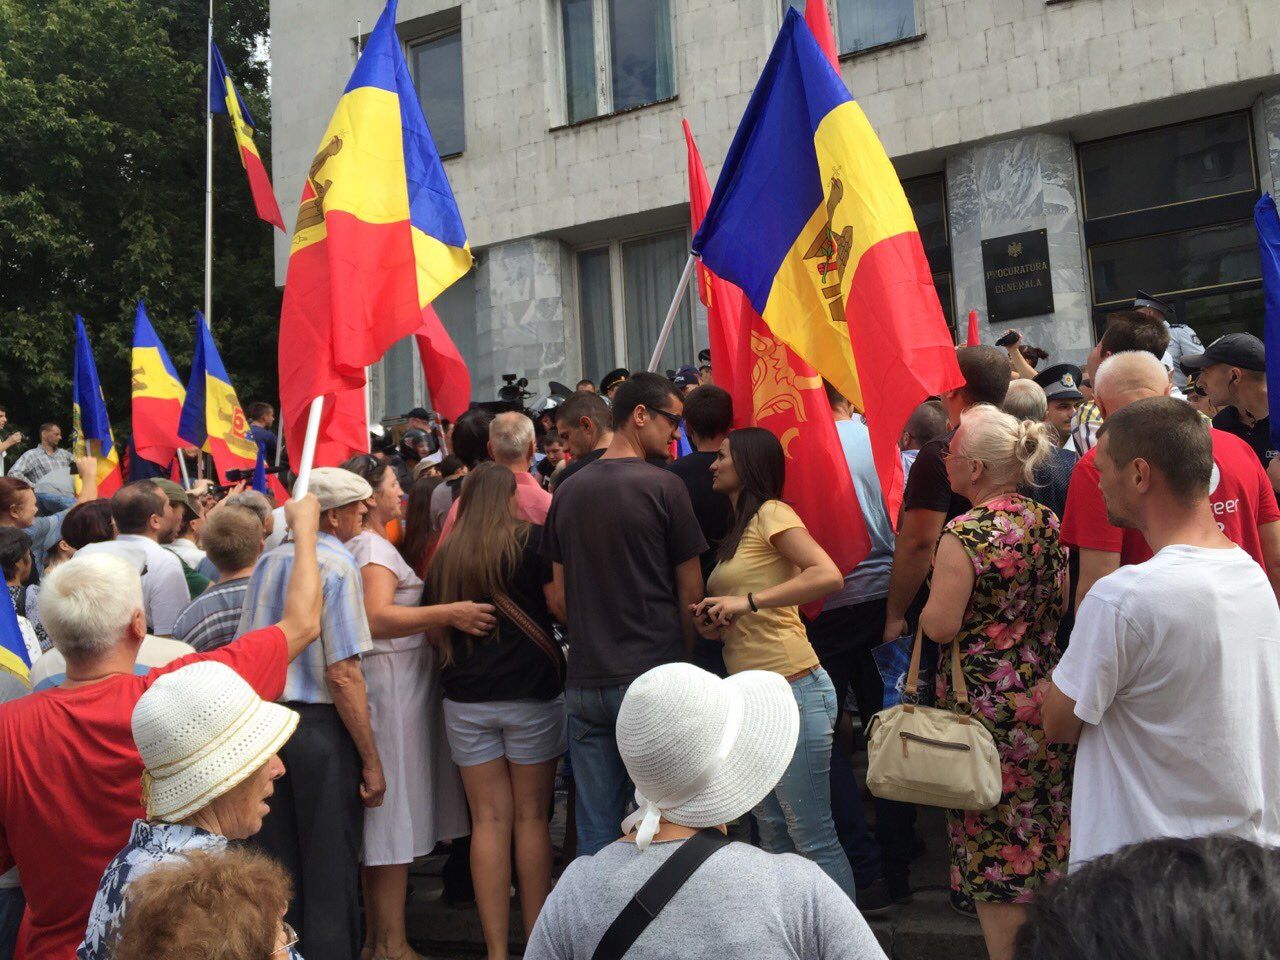 Массовые протесты в Молдове: драки, задержания и палатки в центре столицы, опубликованы фото и видео